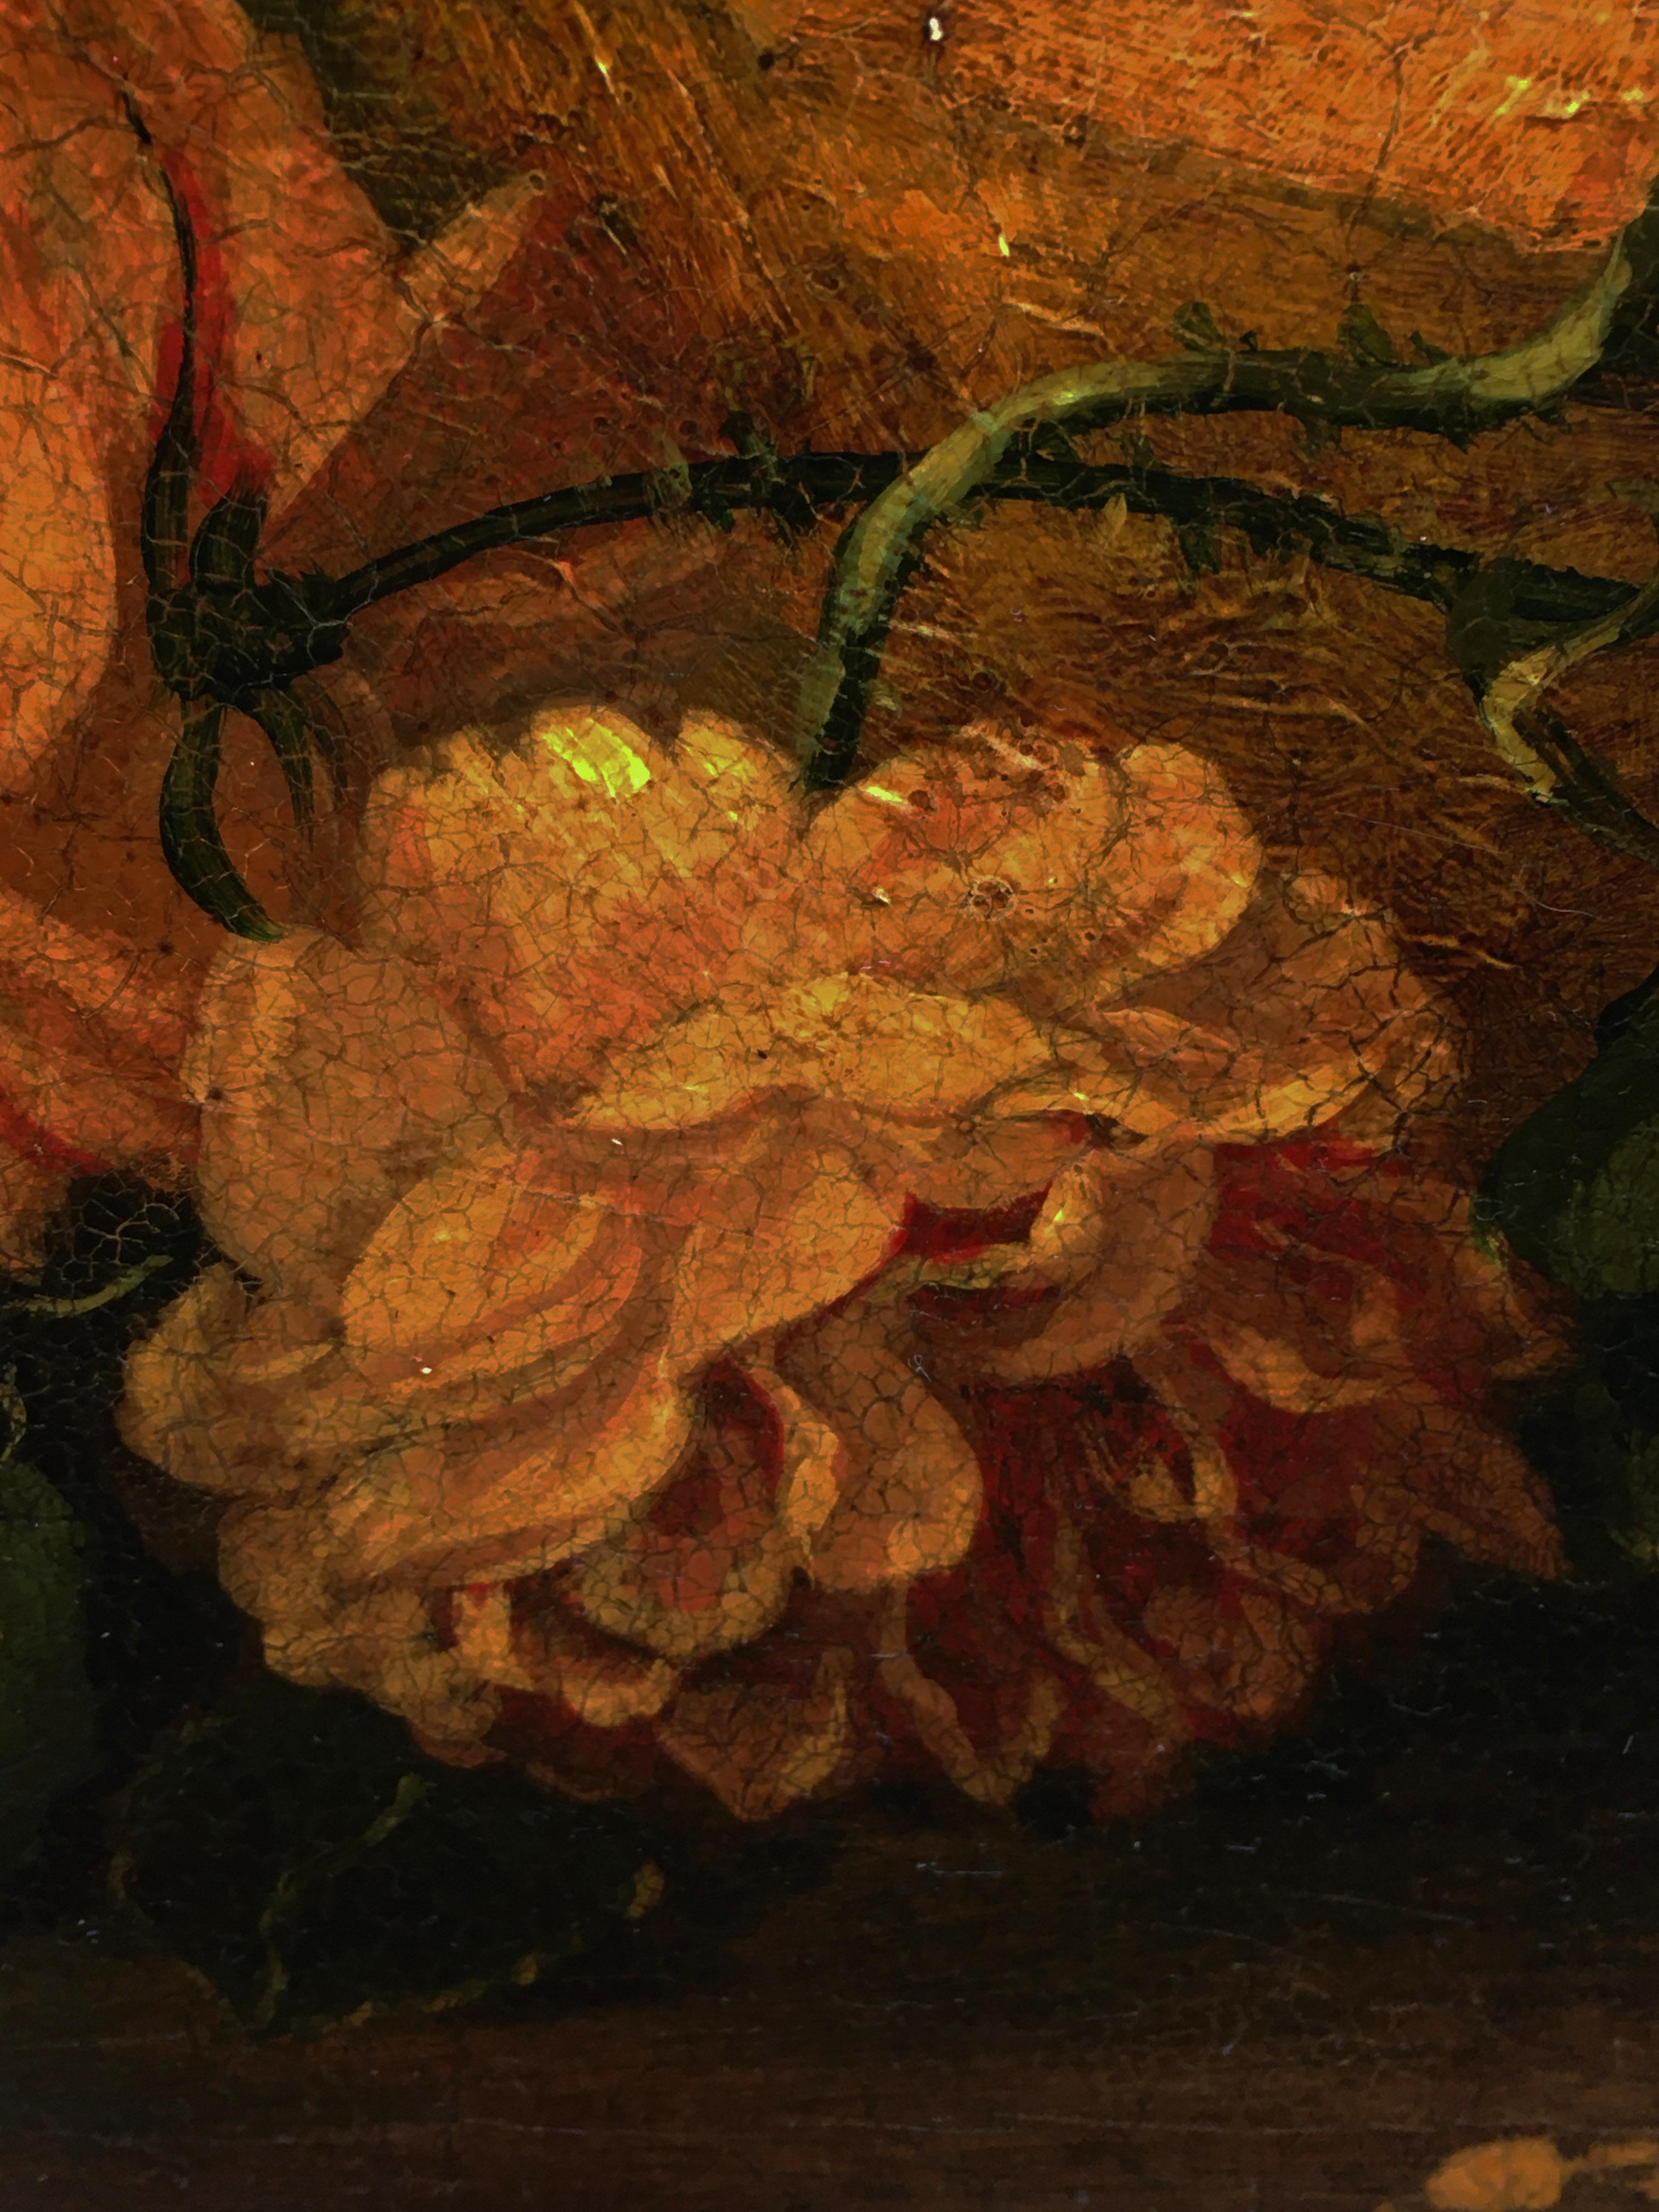 Cherubim mit Blumen - Öl auf Leinwand cm.80x100 von Giulio Di Sotto, Italien, 2002.
Blattgold vergoldet  Holzrahmen auf Anfrage erhältlich
Dieses wunderbare Öl auf Leinwand stellt zwei Putten dar, die mit einer Komposition aus Blumen und Früchten